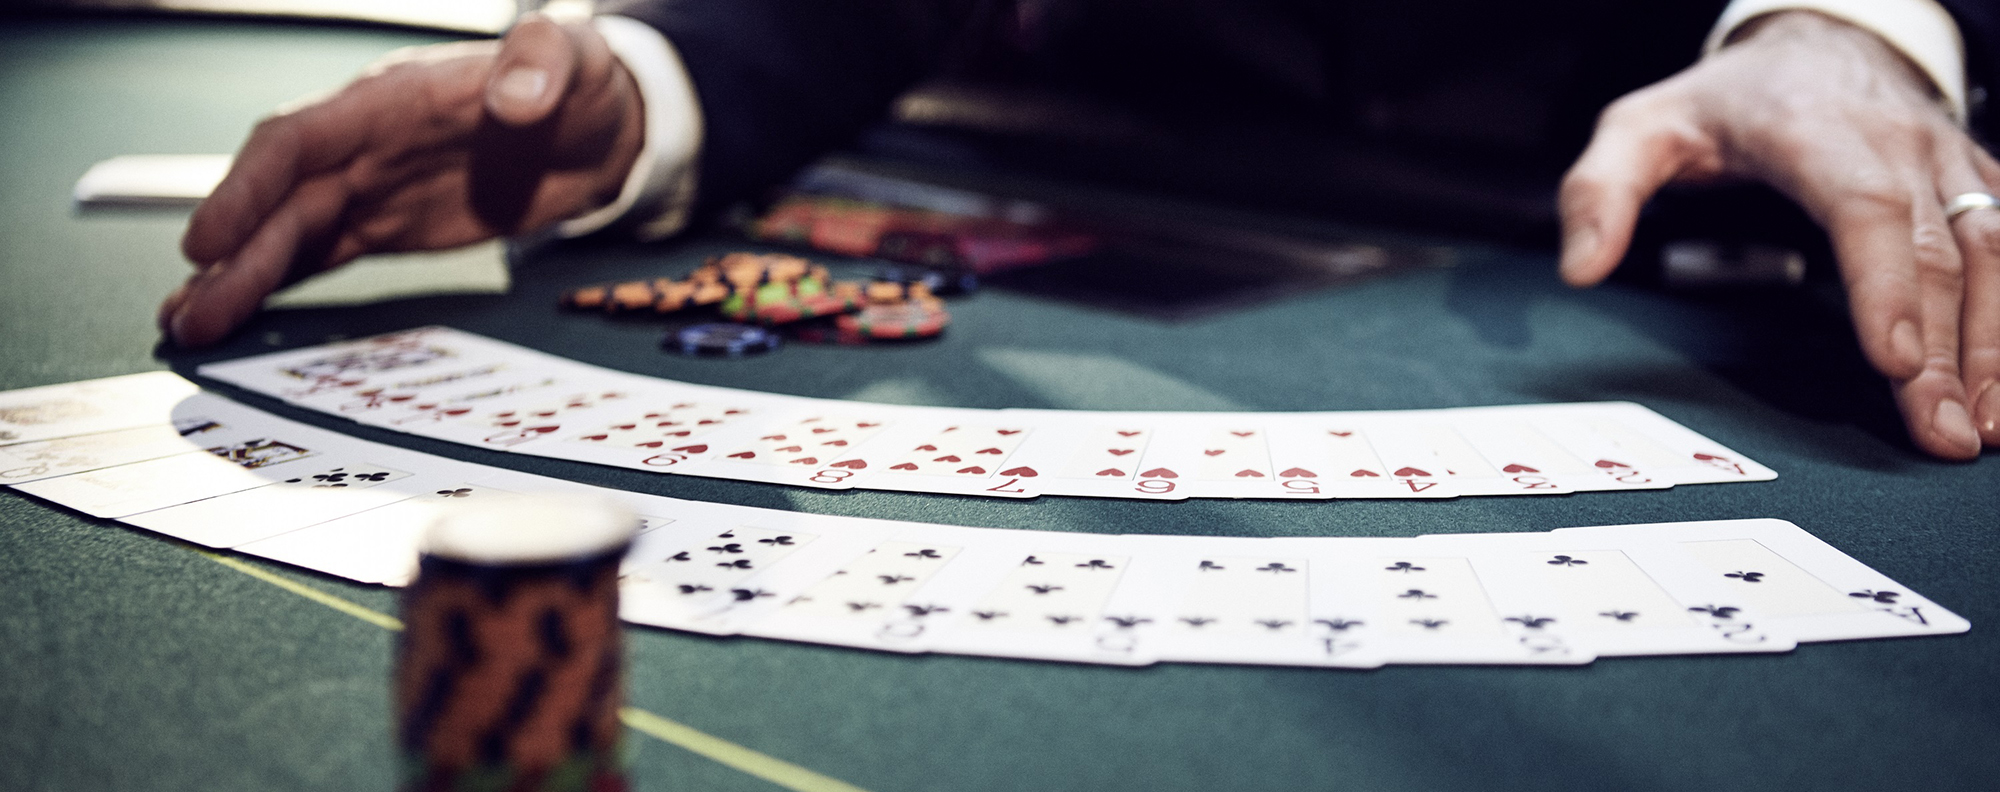 Zwei Hände präsentieren Spielkarten, die in zwei Reihen fächerförmig auf einem Black-Jack-Tisch liegen.